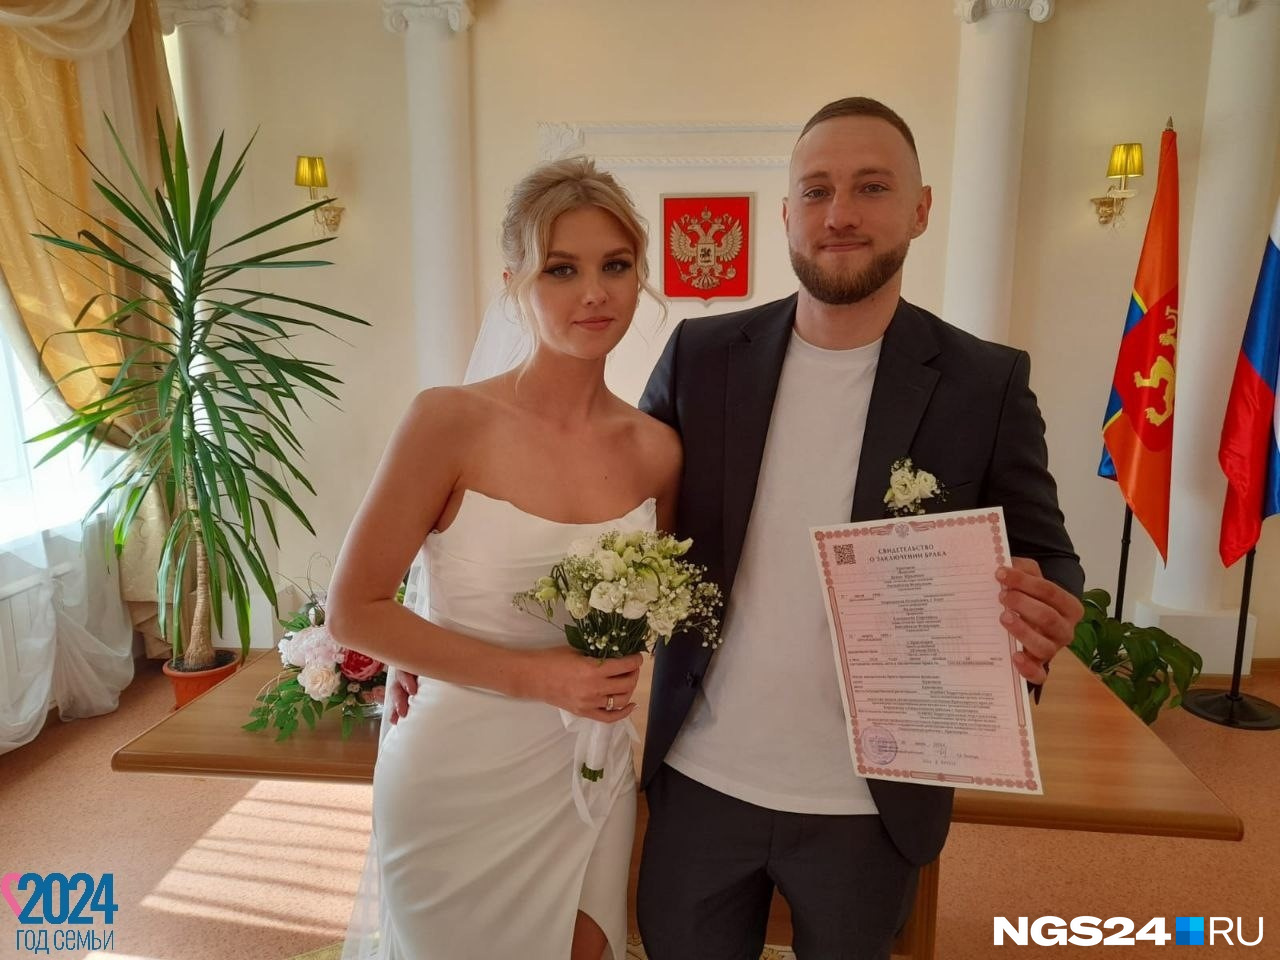 Жених в Красноярске потерял паспорт прямо в день свадьбы. Поженят ли в ЗАГСе в такой ситуации?